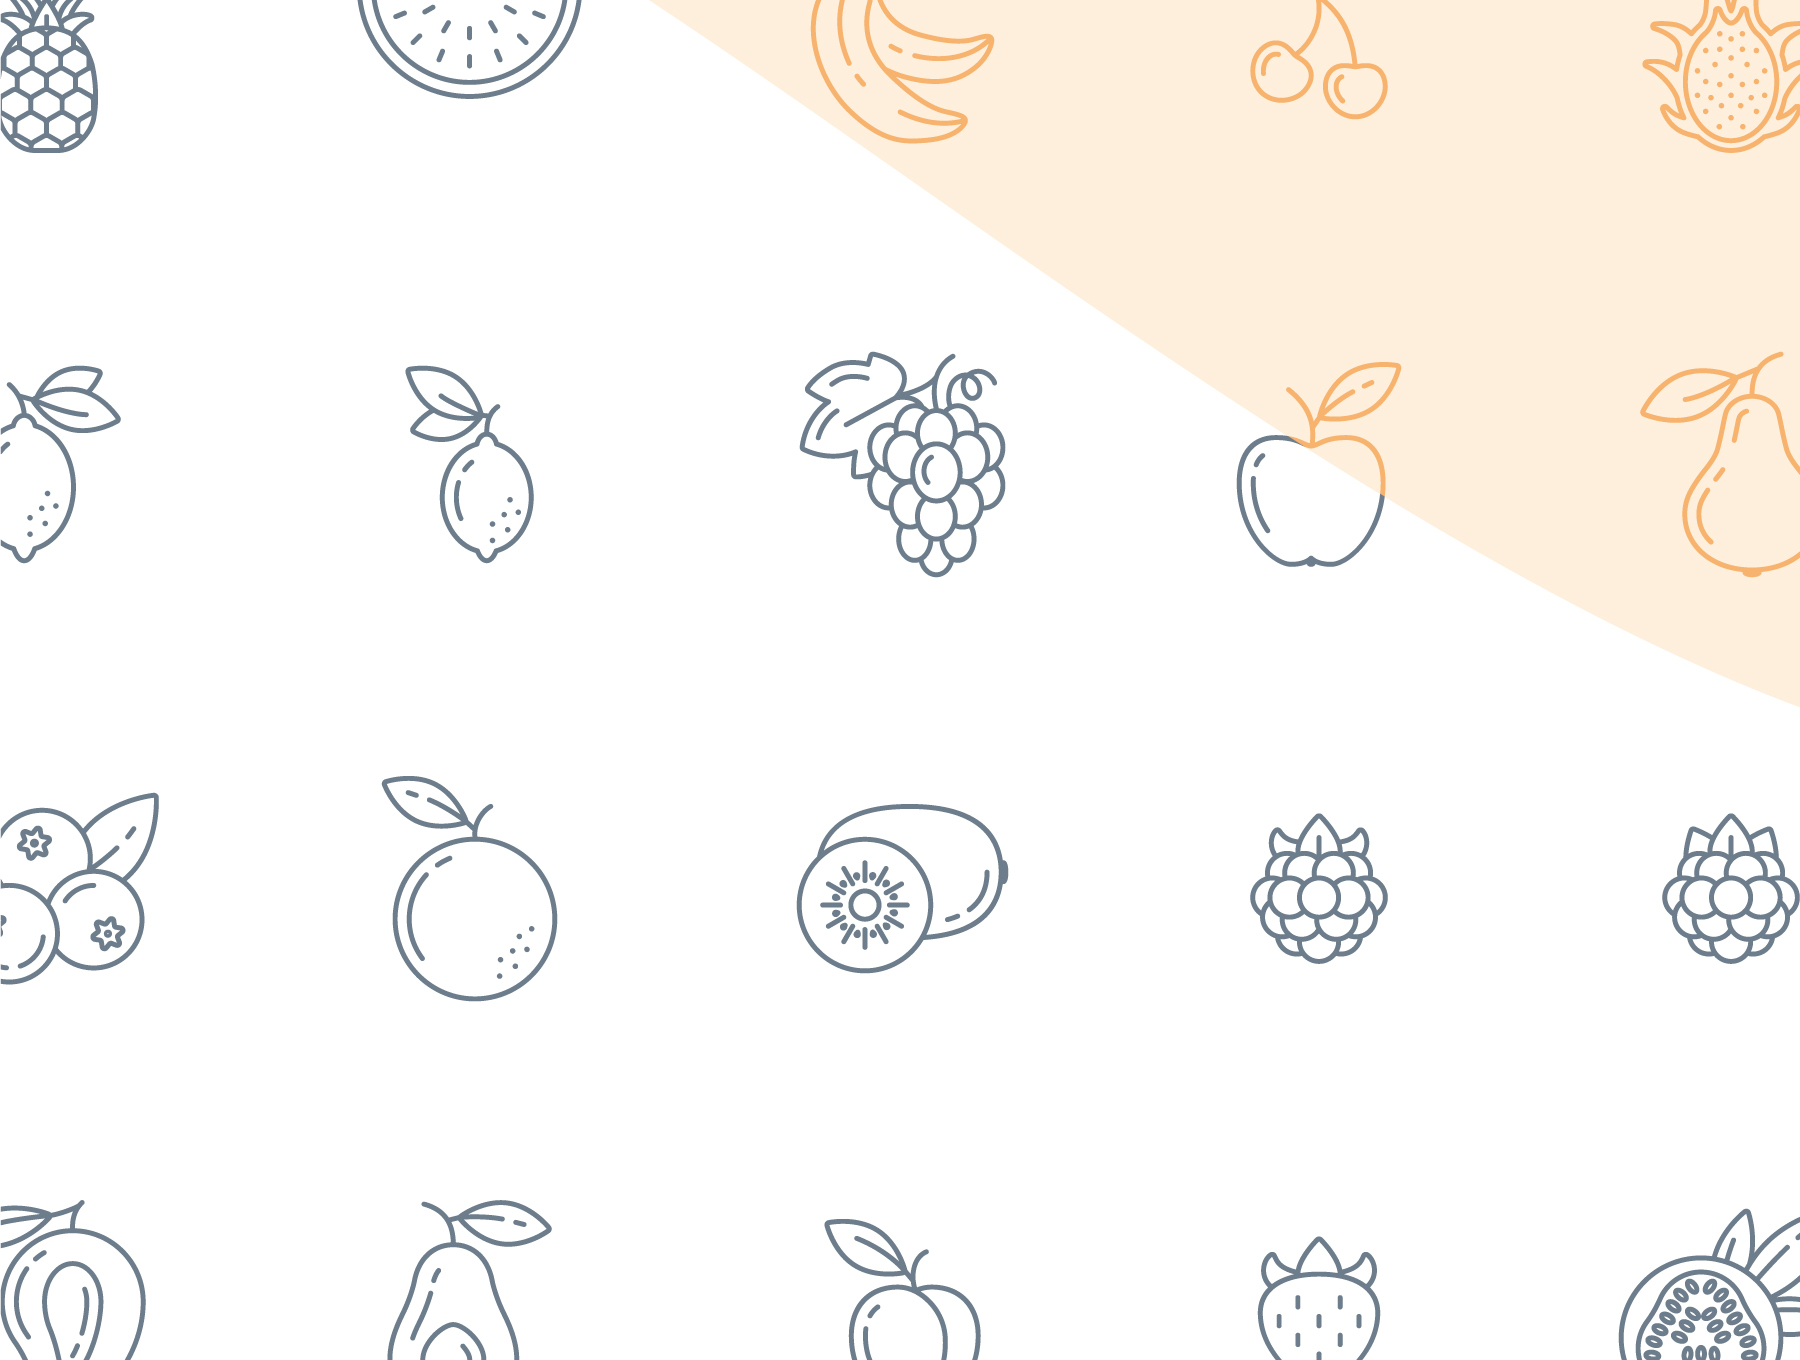 绘制精良的水果图标套装下载Fruit Icons #3341